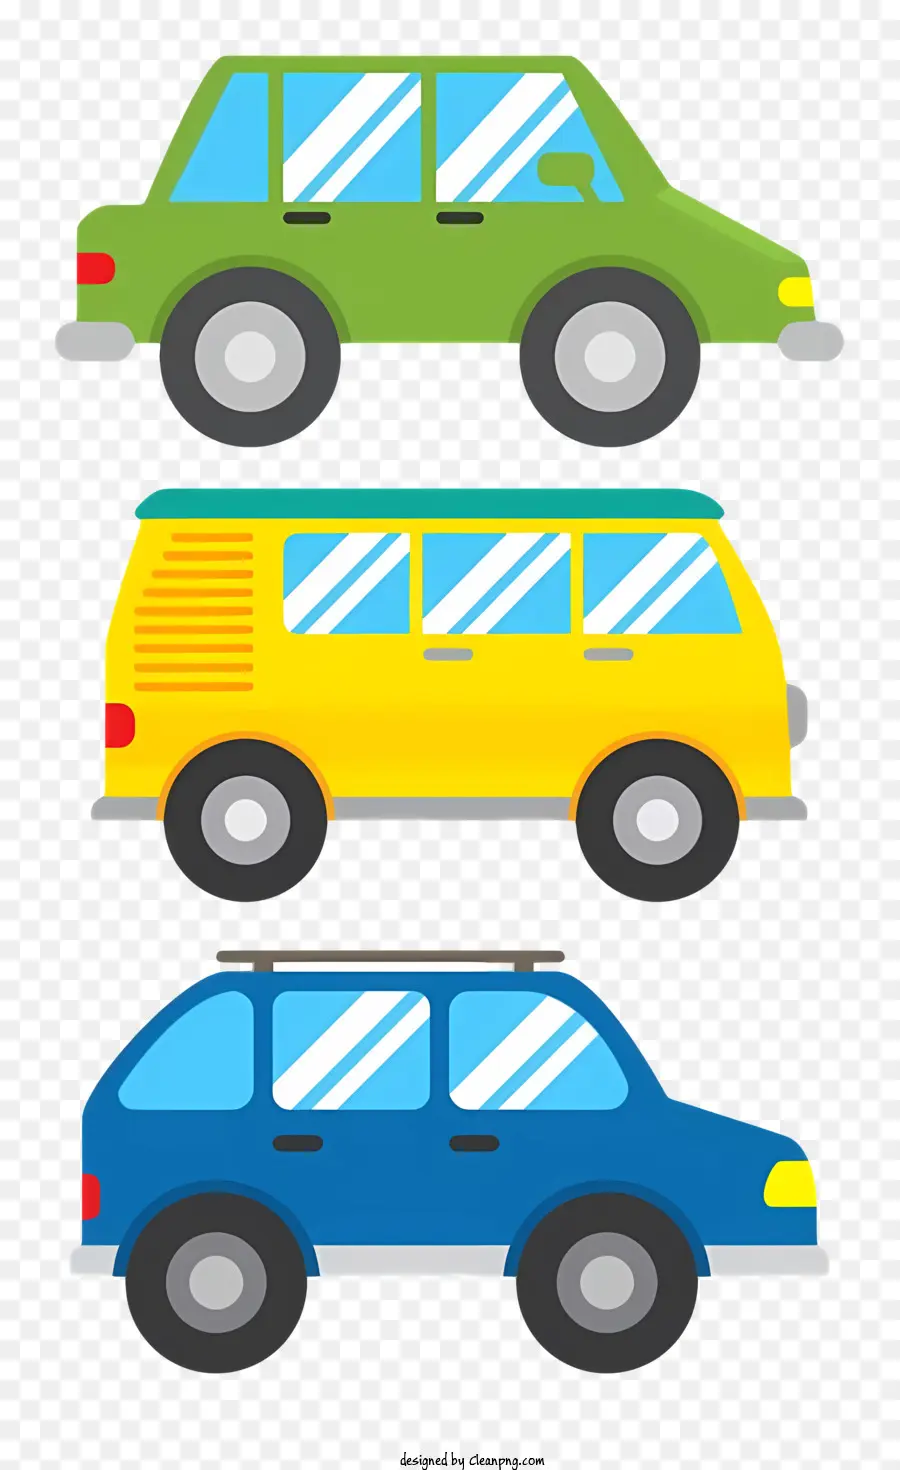 ô tô xe màu đỏ xe màu xanh xe hơi màu vàng đỗ xe - Hình minh họa của những chiếc xe Đỗ xe đỏ, xanh và vàng